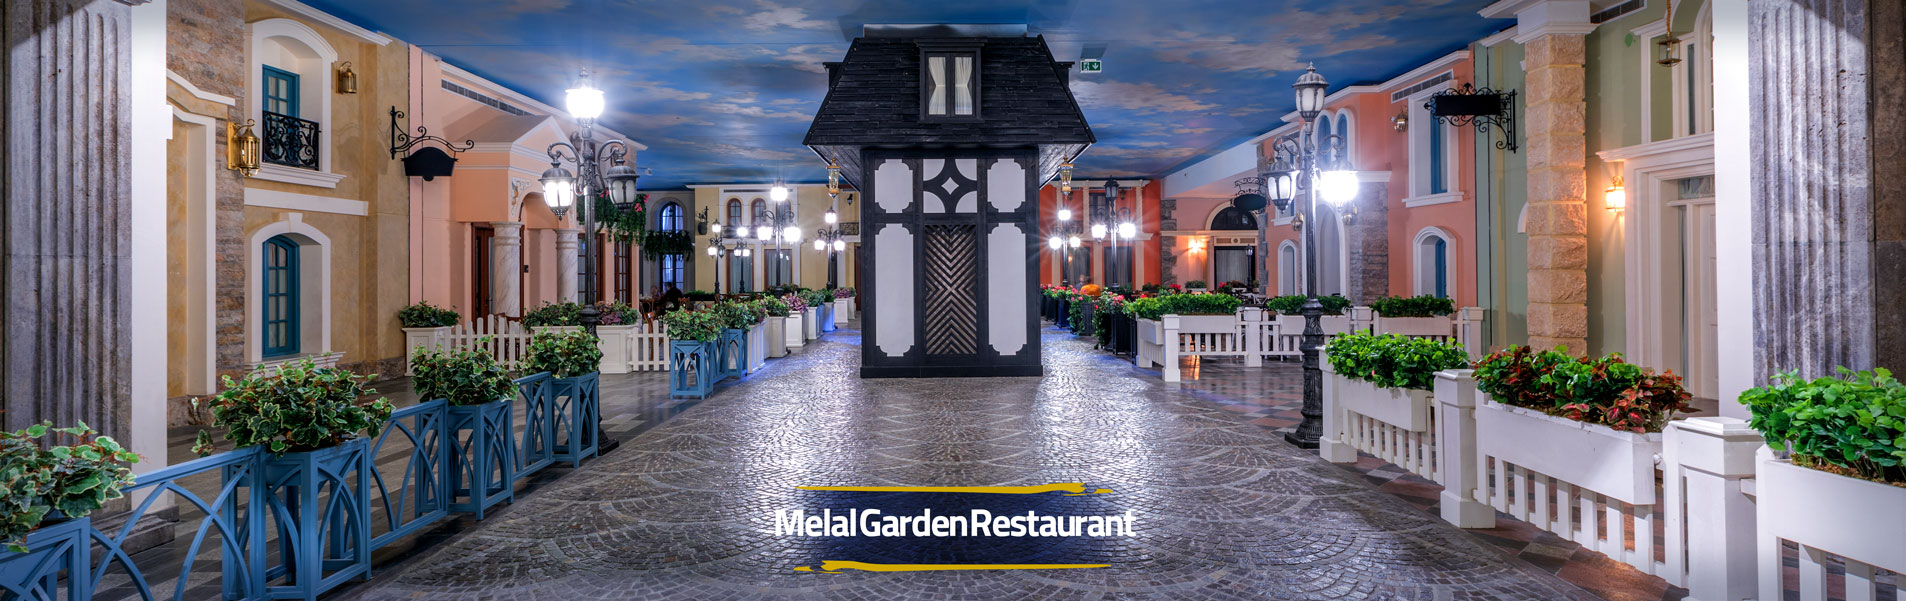 Melal Garden Restaurant